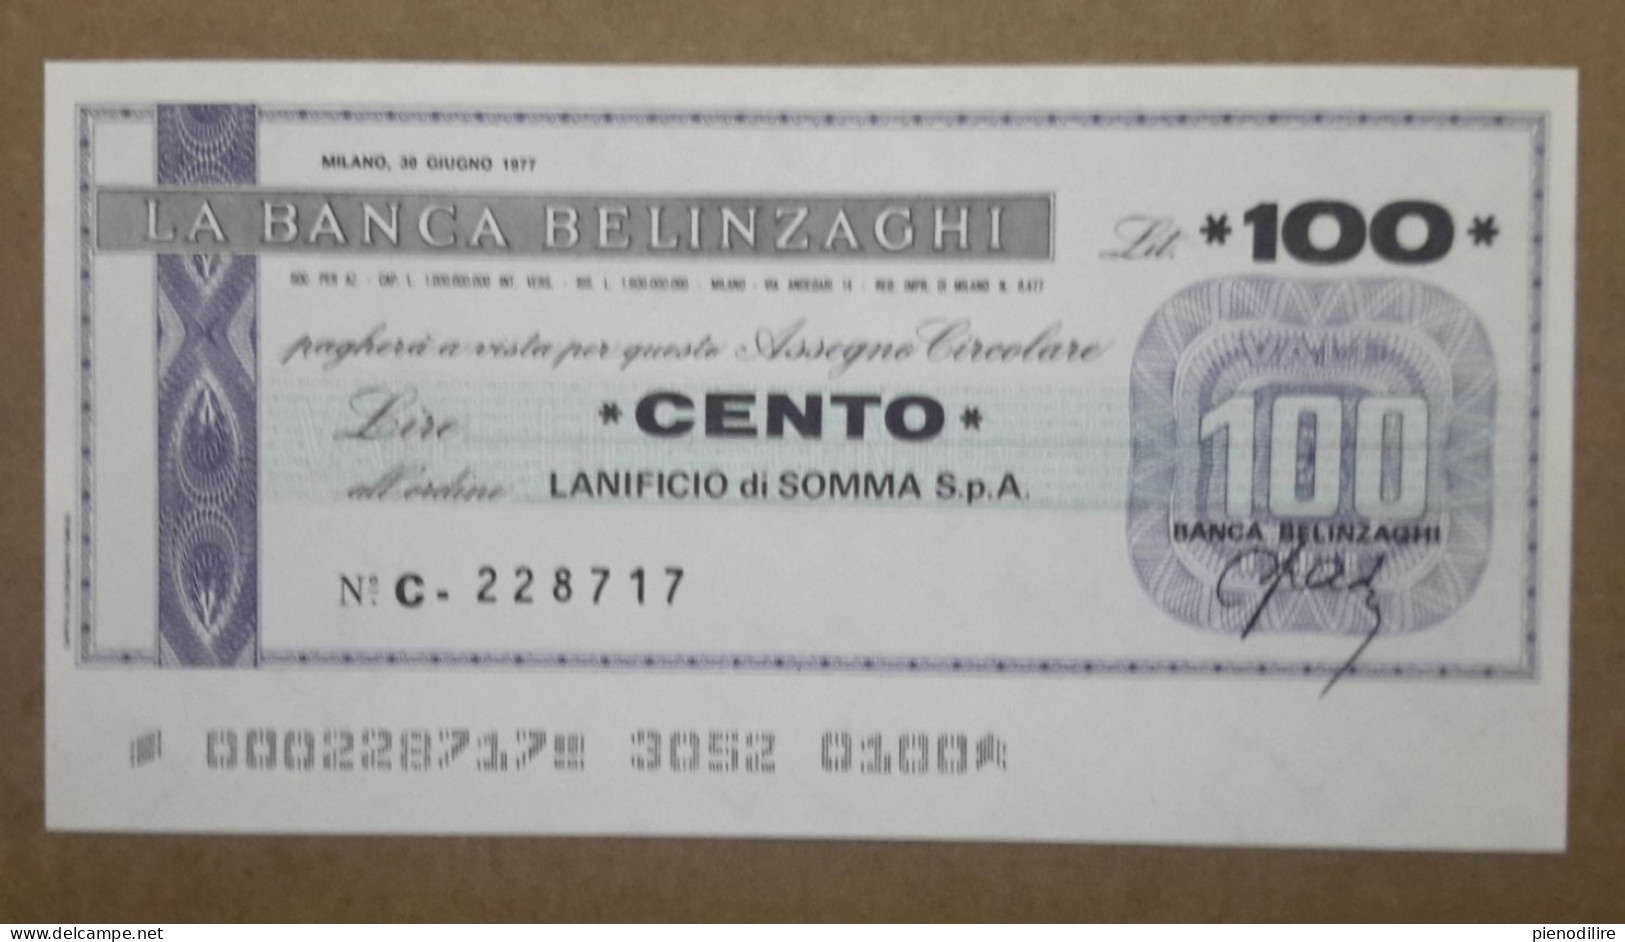 BANCA BELINZAGHI, 100 LIRE 30.06.1977 LANIFICIO SOMMA S.P.A. MILANO (A1.88) - [10] Checks And Mini-checks